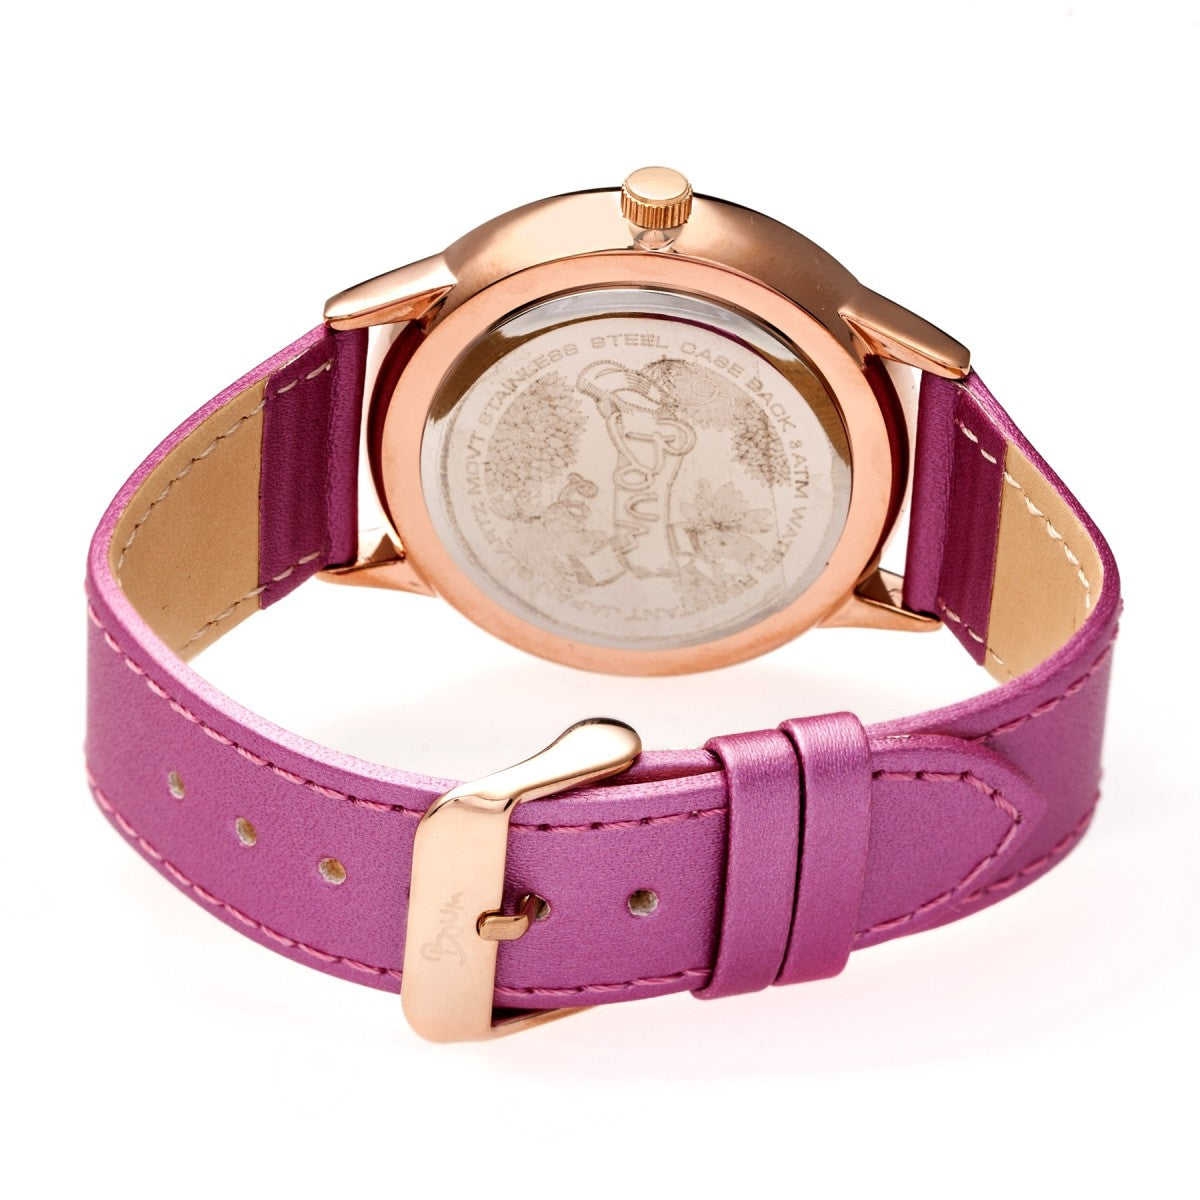 Boum Dimanche Leather-Strap Watch - Light Pink - BOUBM4603